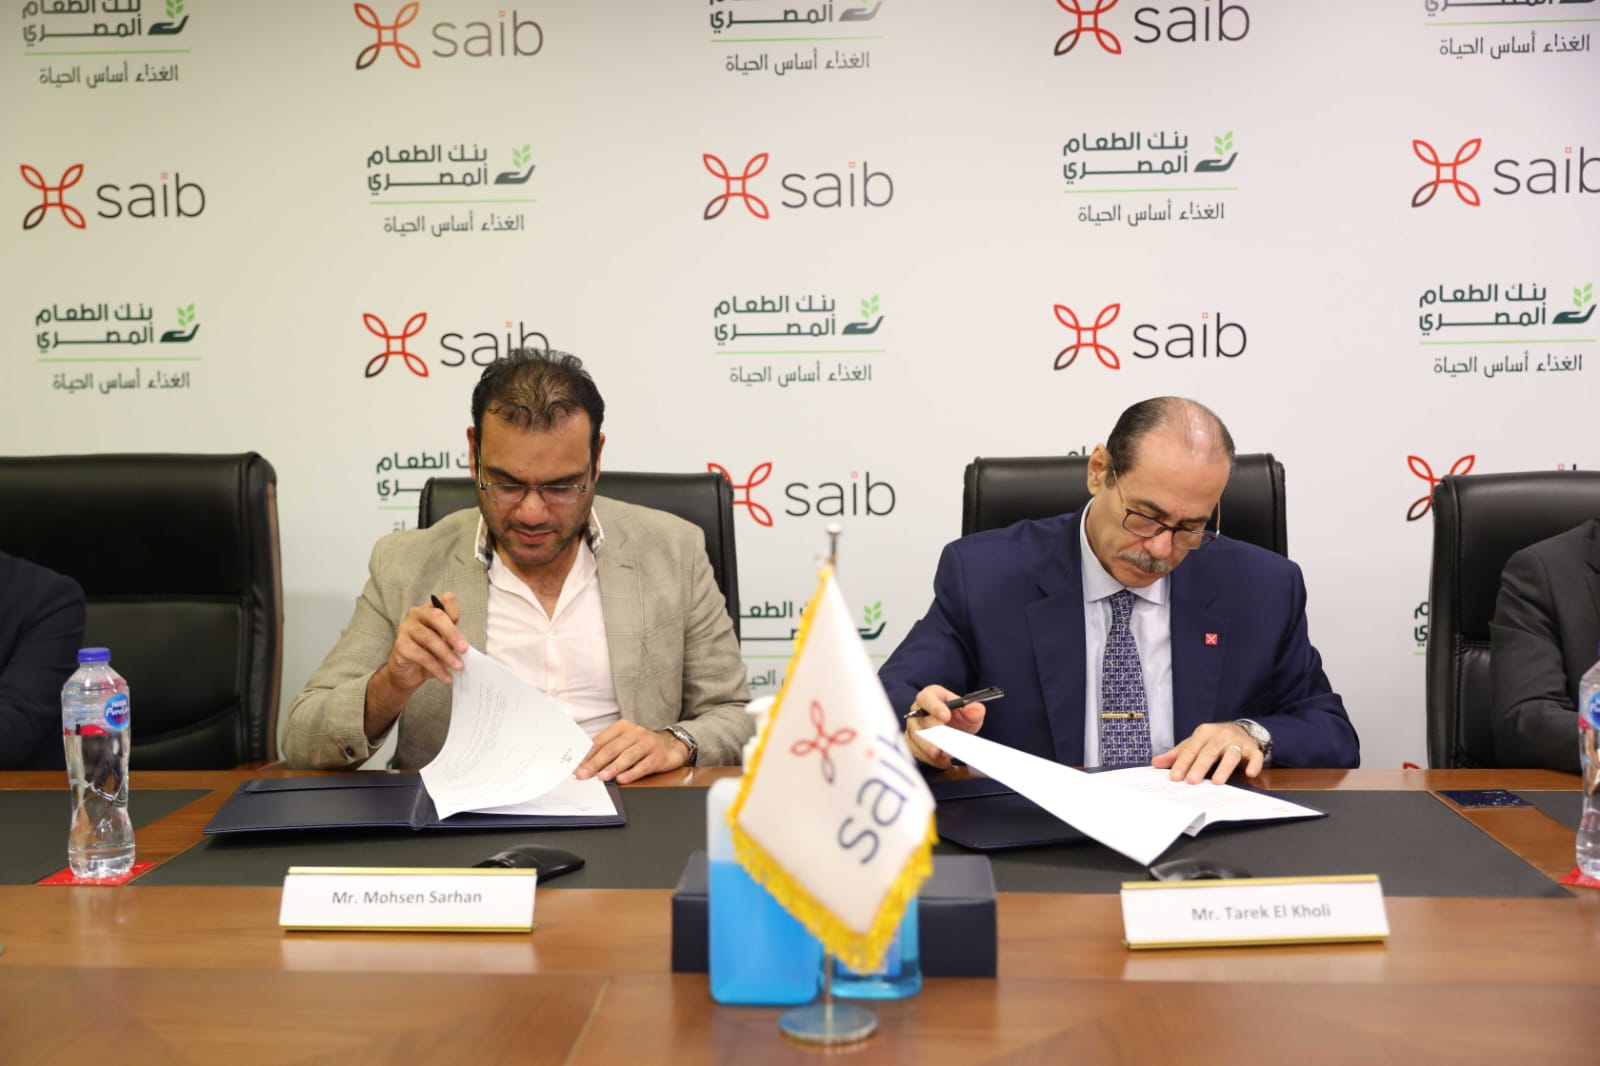 بنك saib يوقع بروتوكول تعاون مع بنك الطعام المصري